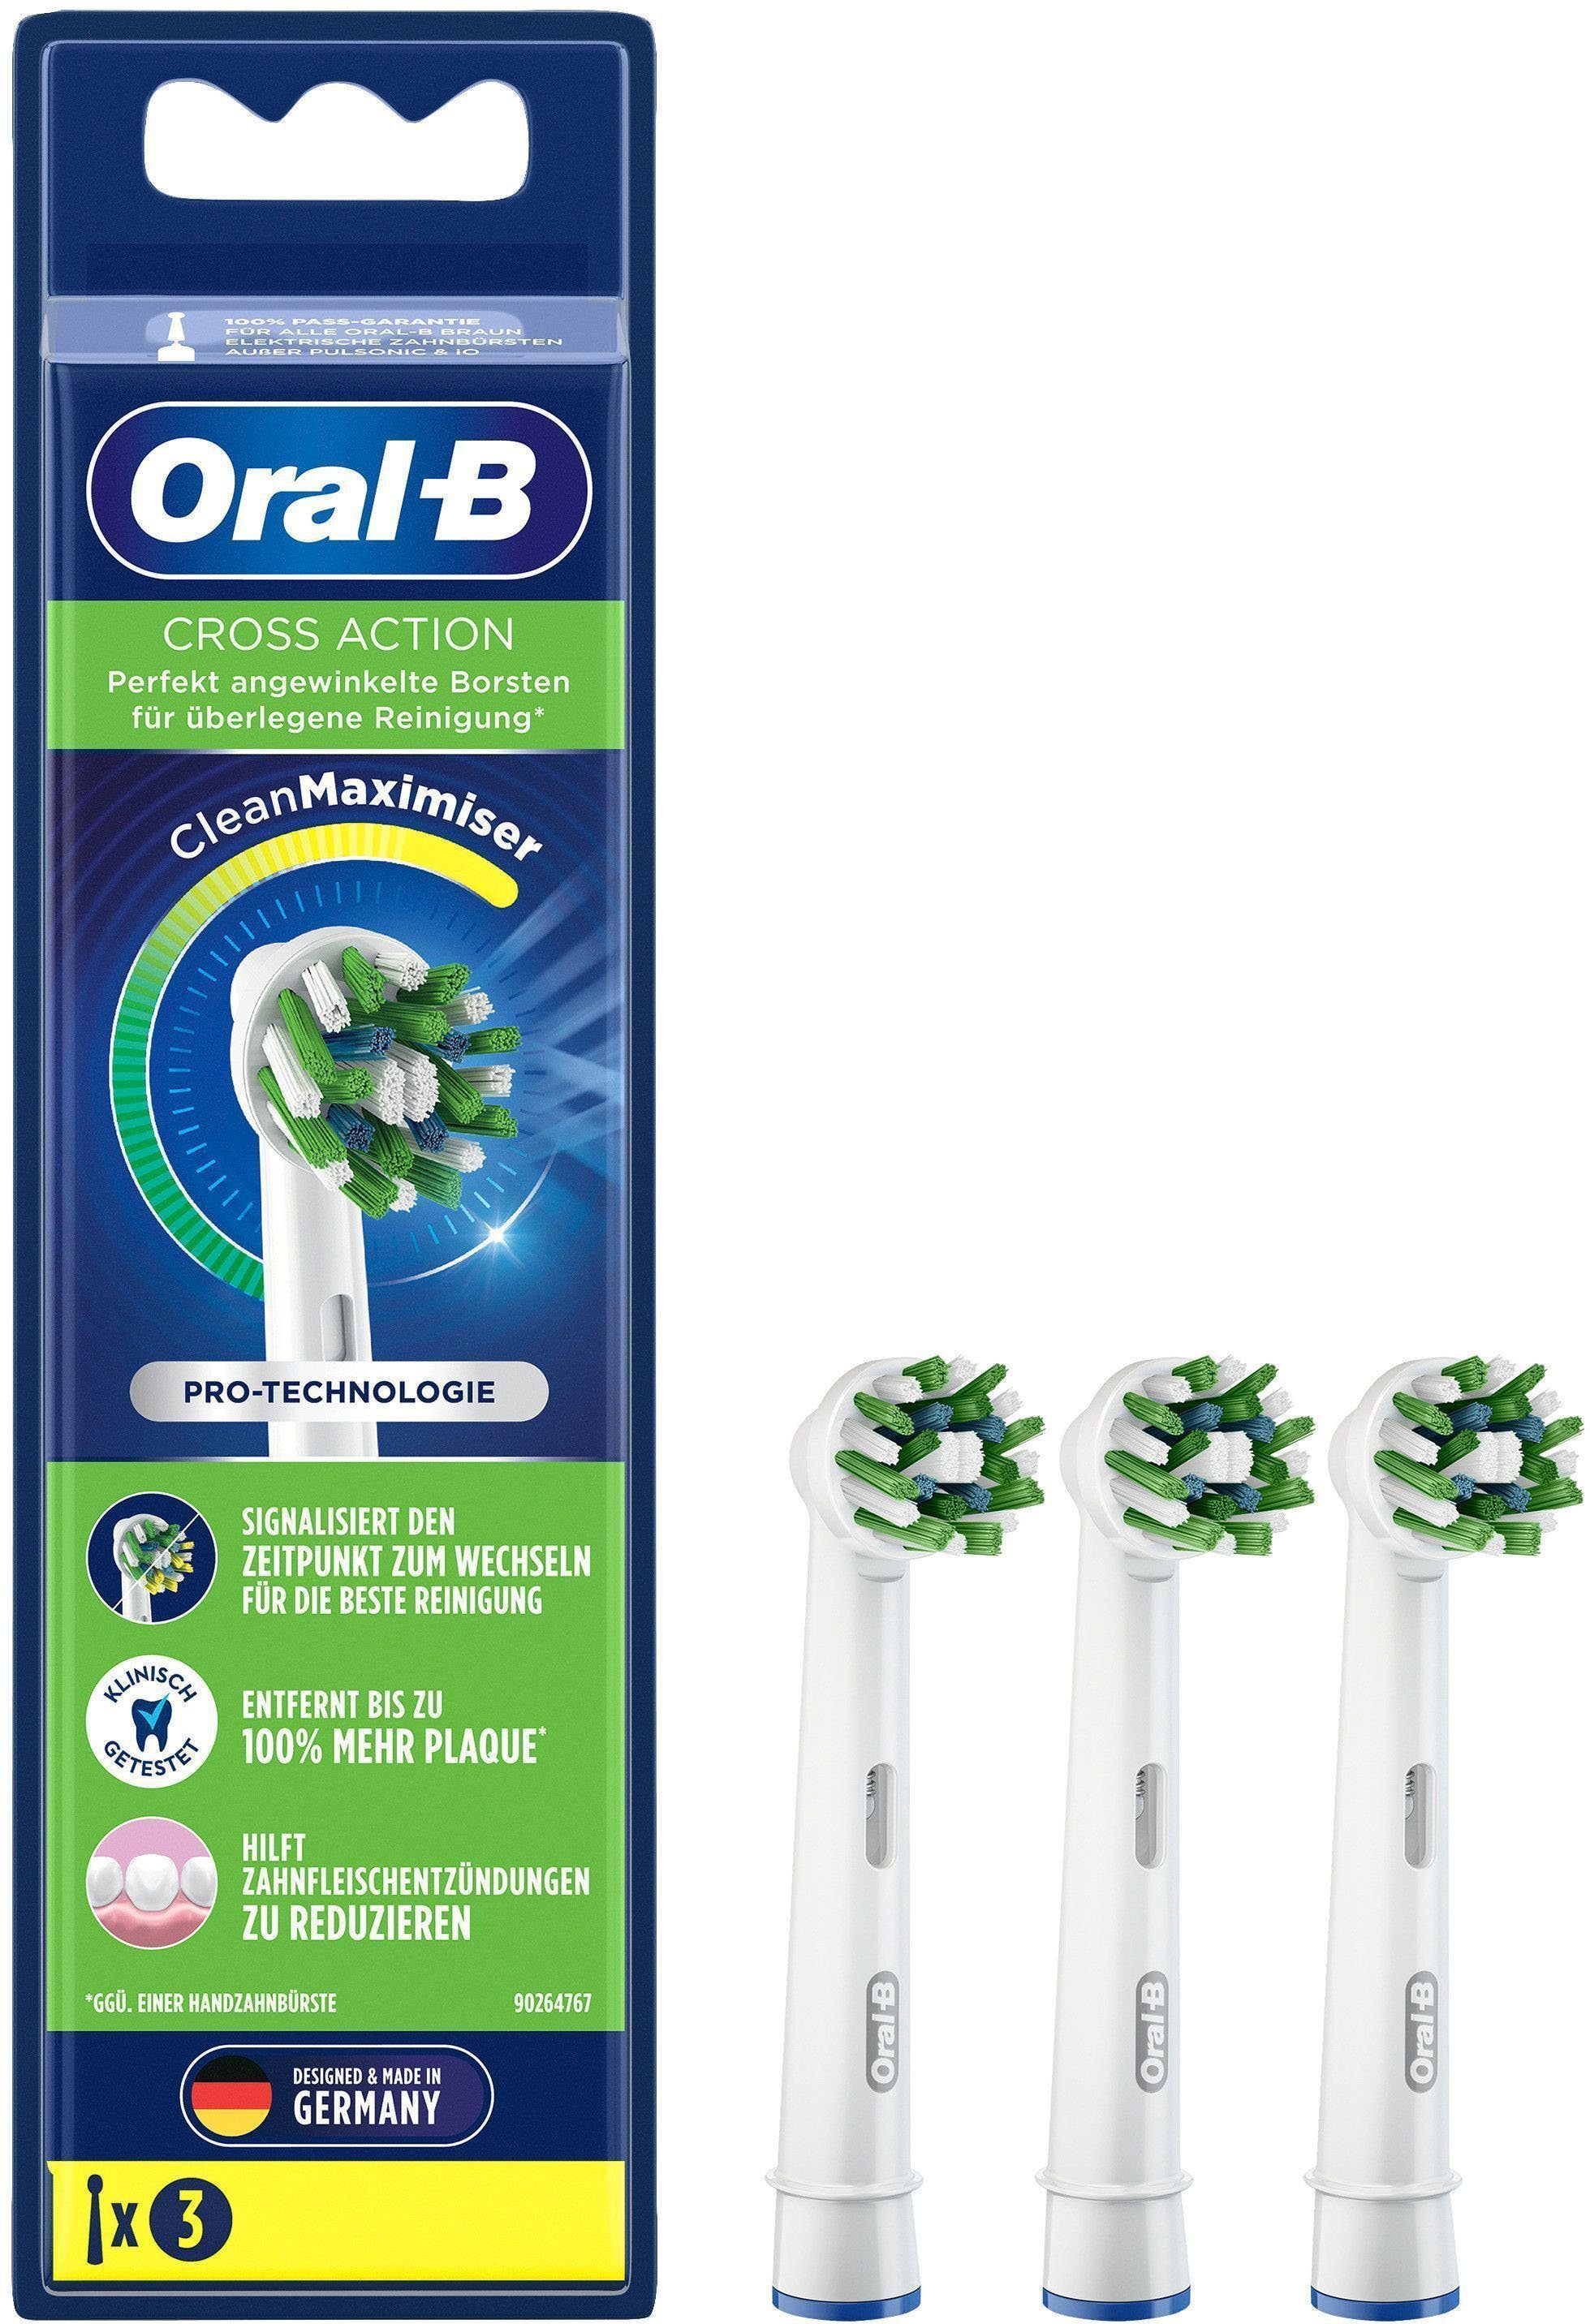 angewinkelte Reinigung Borsten Perfekt für Pro-Technologie: Oral-B überlegene Aufsteckbürsten CleanMaximizer, CrossAction